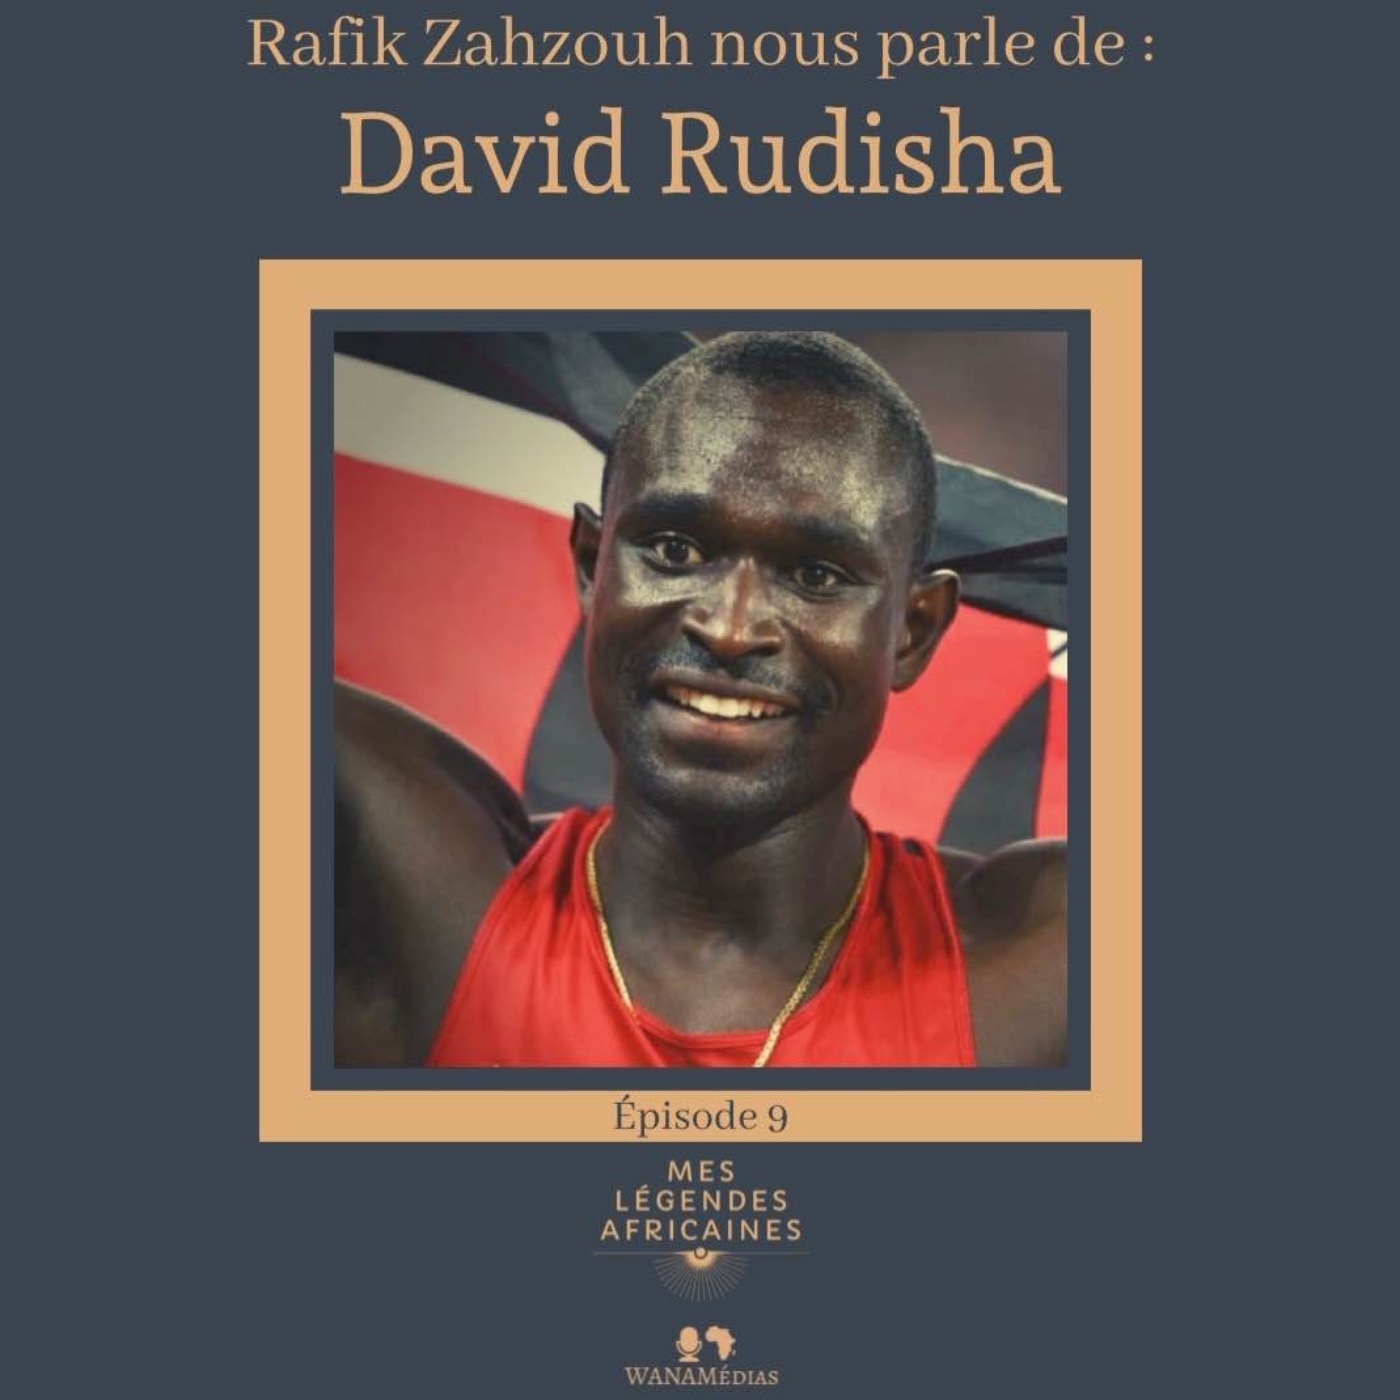 David Rudisha par Rafik Zahzouh